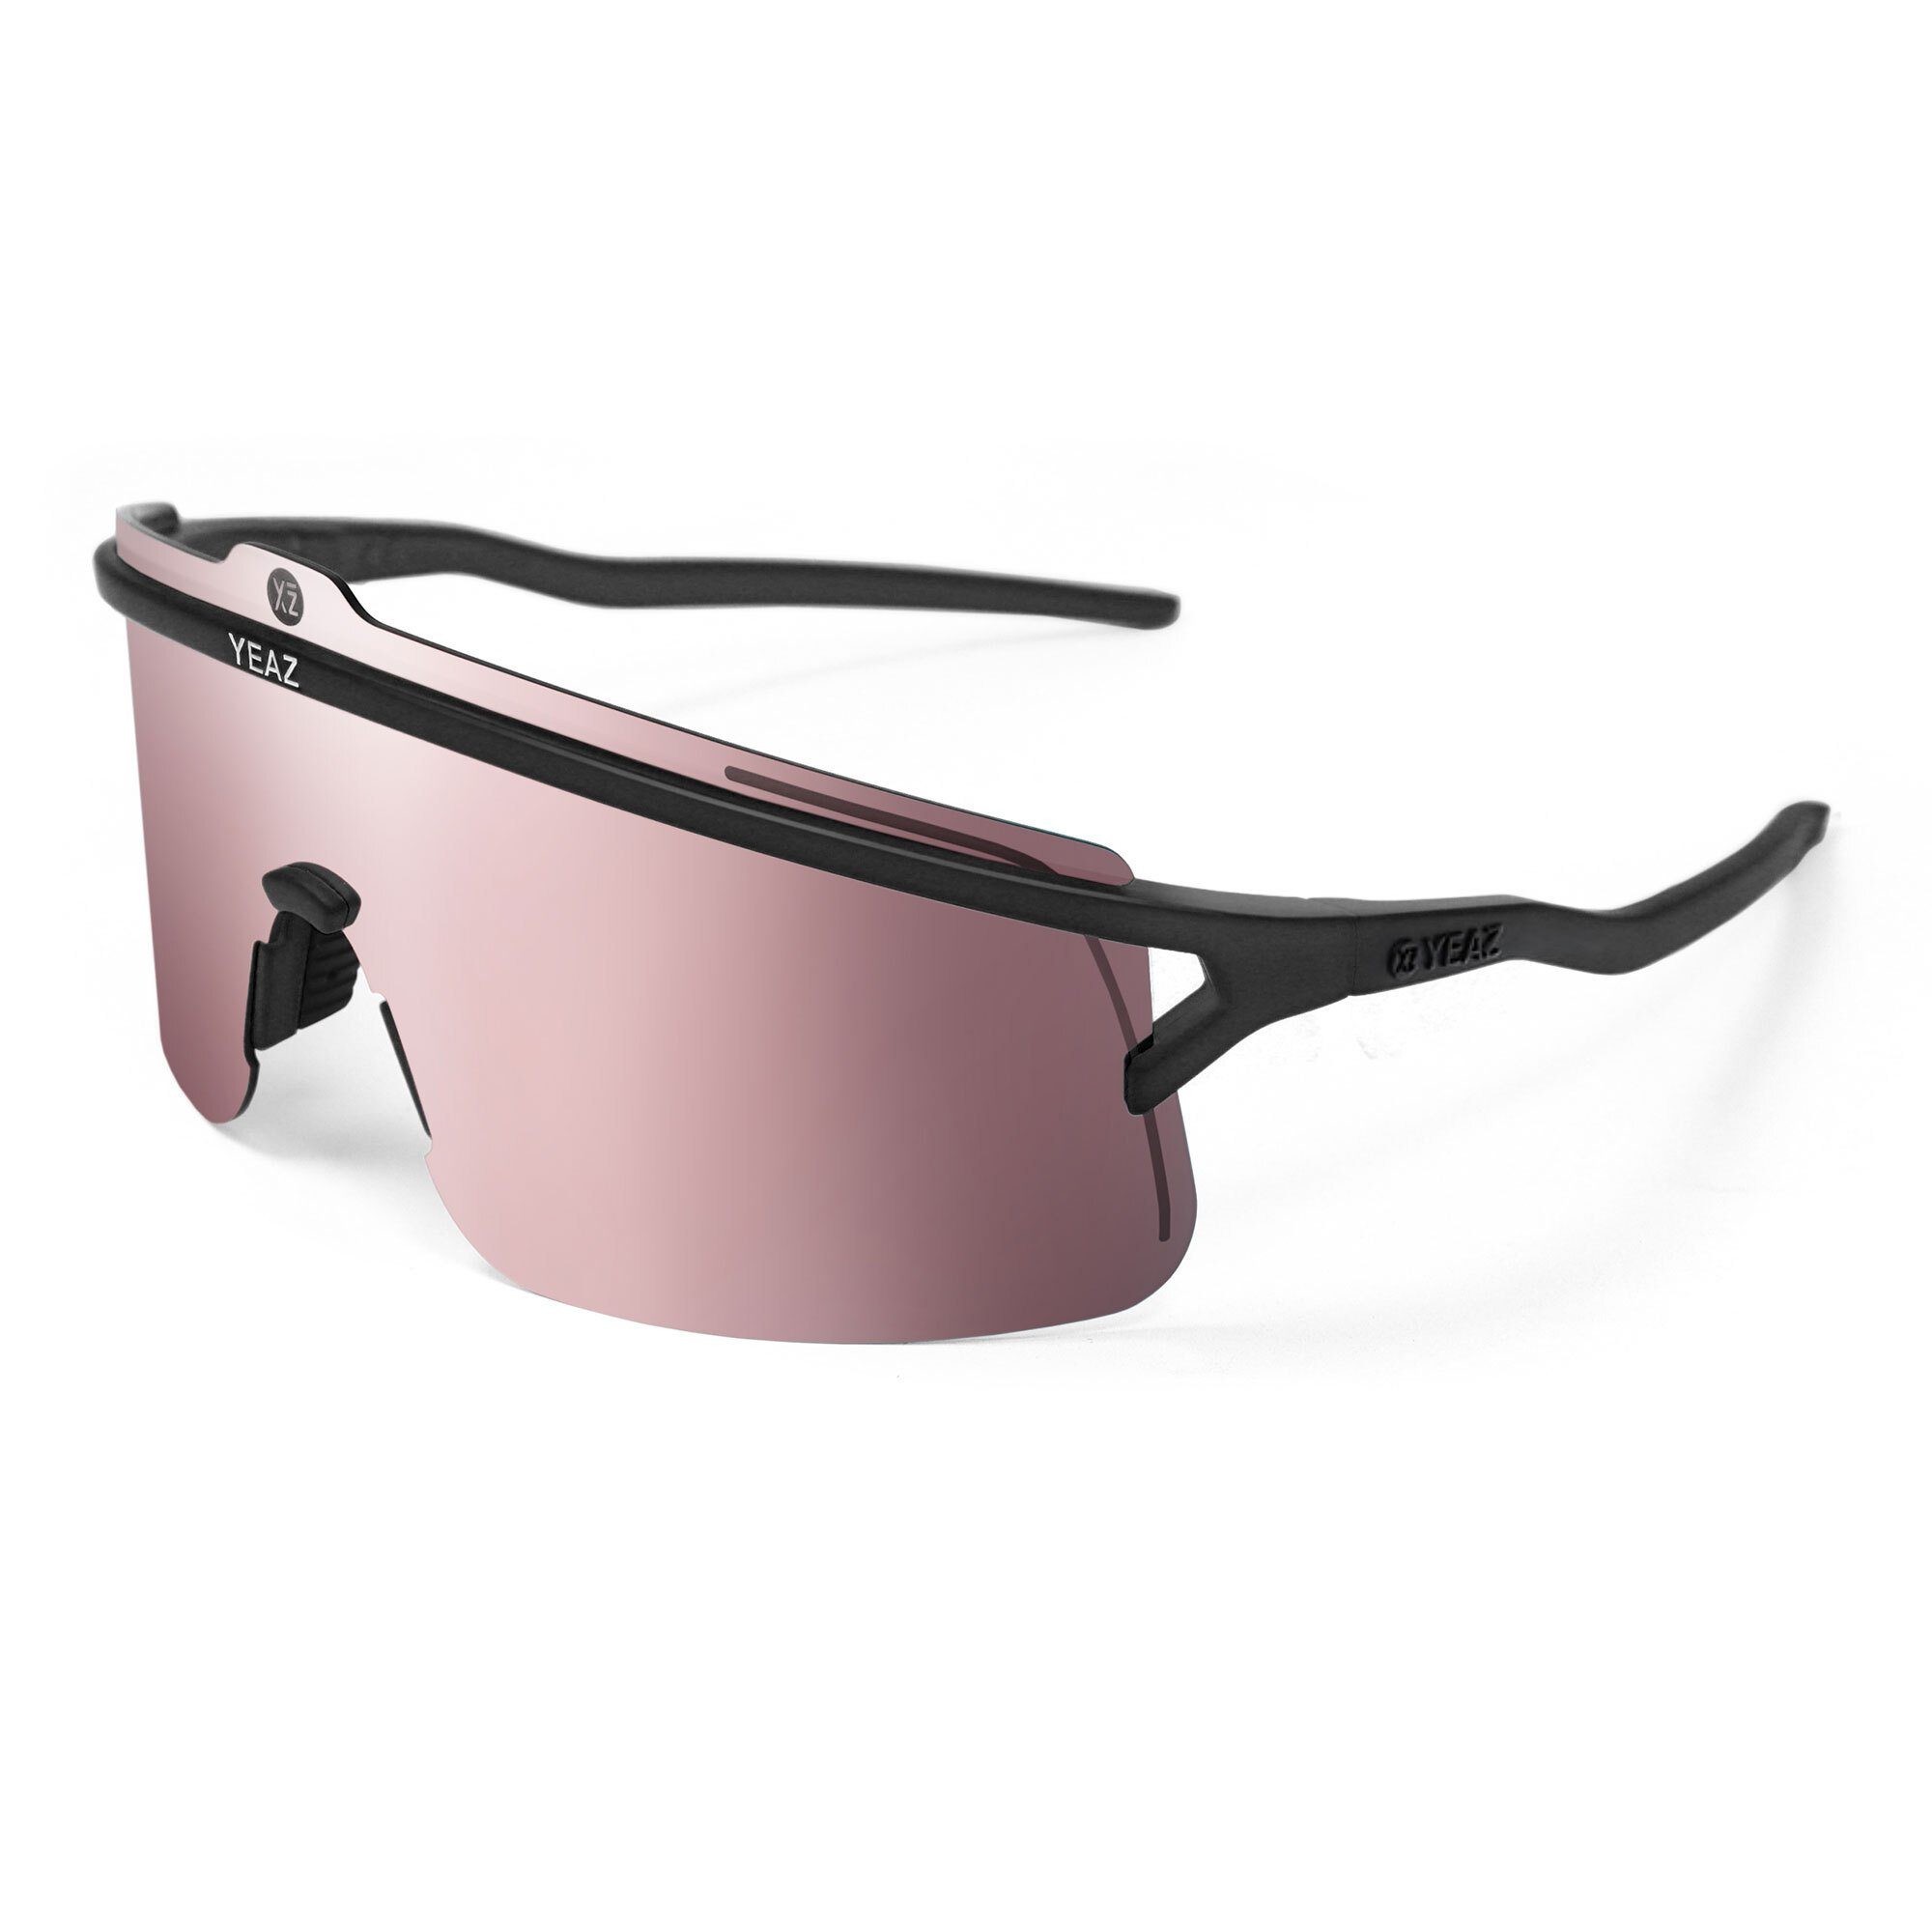 Style perfekte Erlebe Komfort SUNSHADE Sportbrille black/silver, und Schwarz/Roségold Sicht, YEAZ sport-sonnenbrille